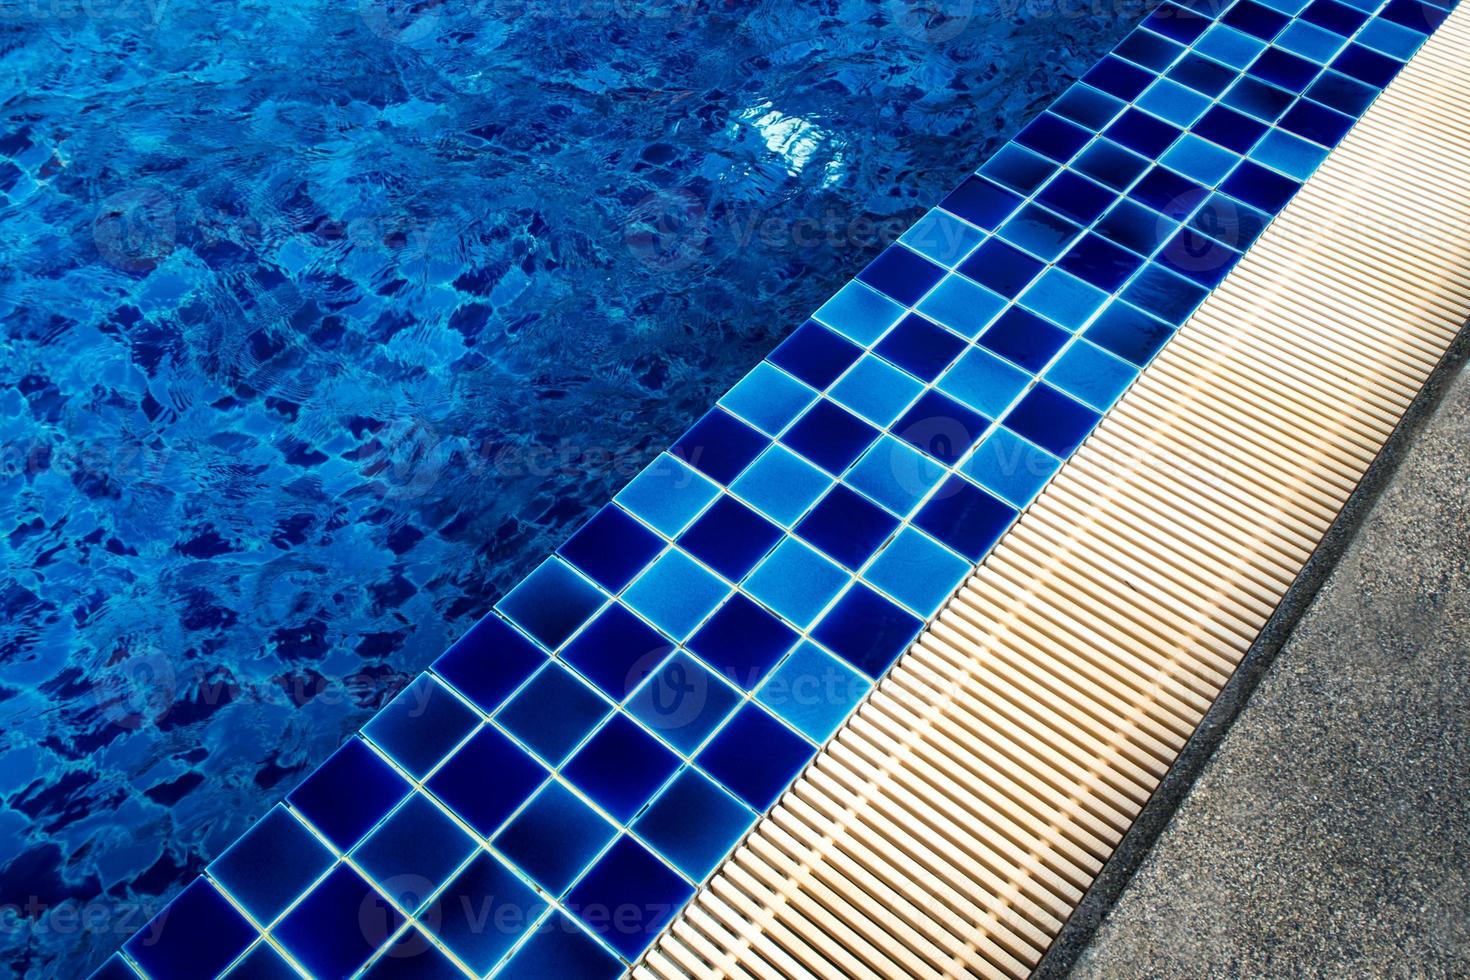 Pisos de baldosas de cerámica azul y canaletas de drenaje junto a la piscina foto